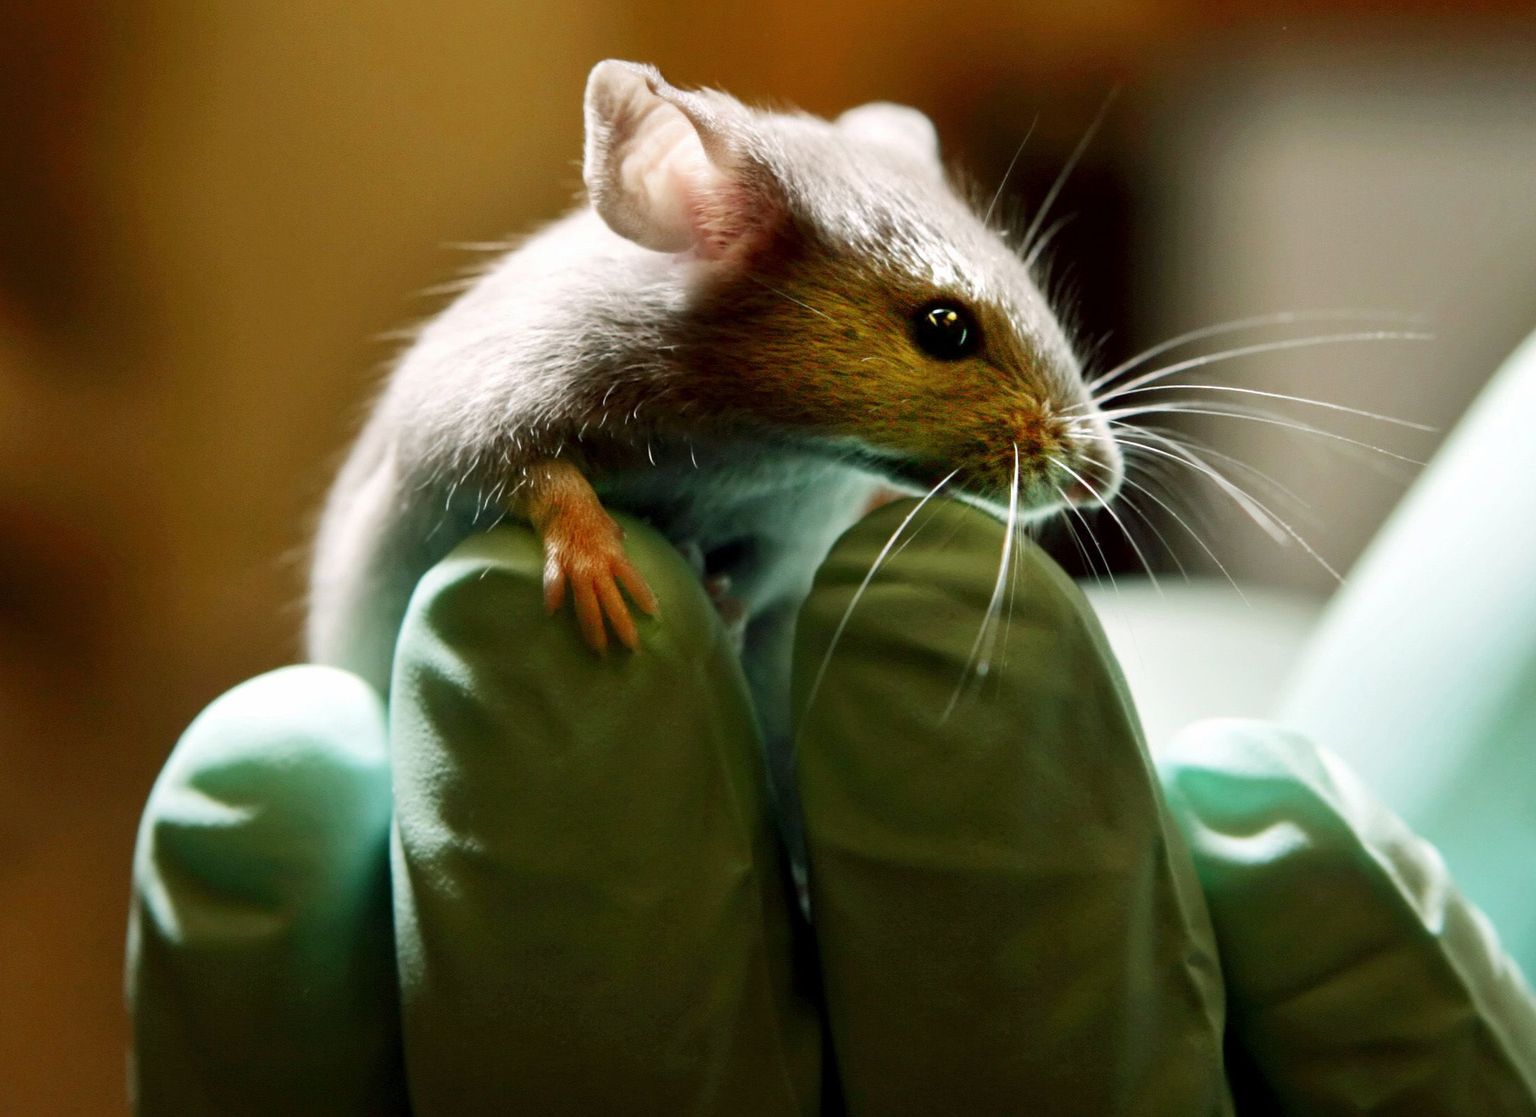 Rotis hiire organite kasvatamisega teadusringkondades laineid löönud teadlane ütleb intervjuus ERR Novaatorile, et loomades kasvatatud inimorganid tulevad varem kui arvamegi.